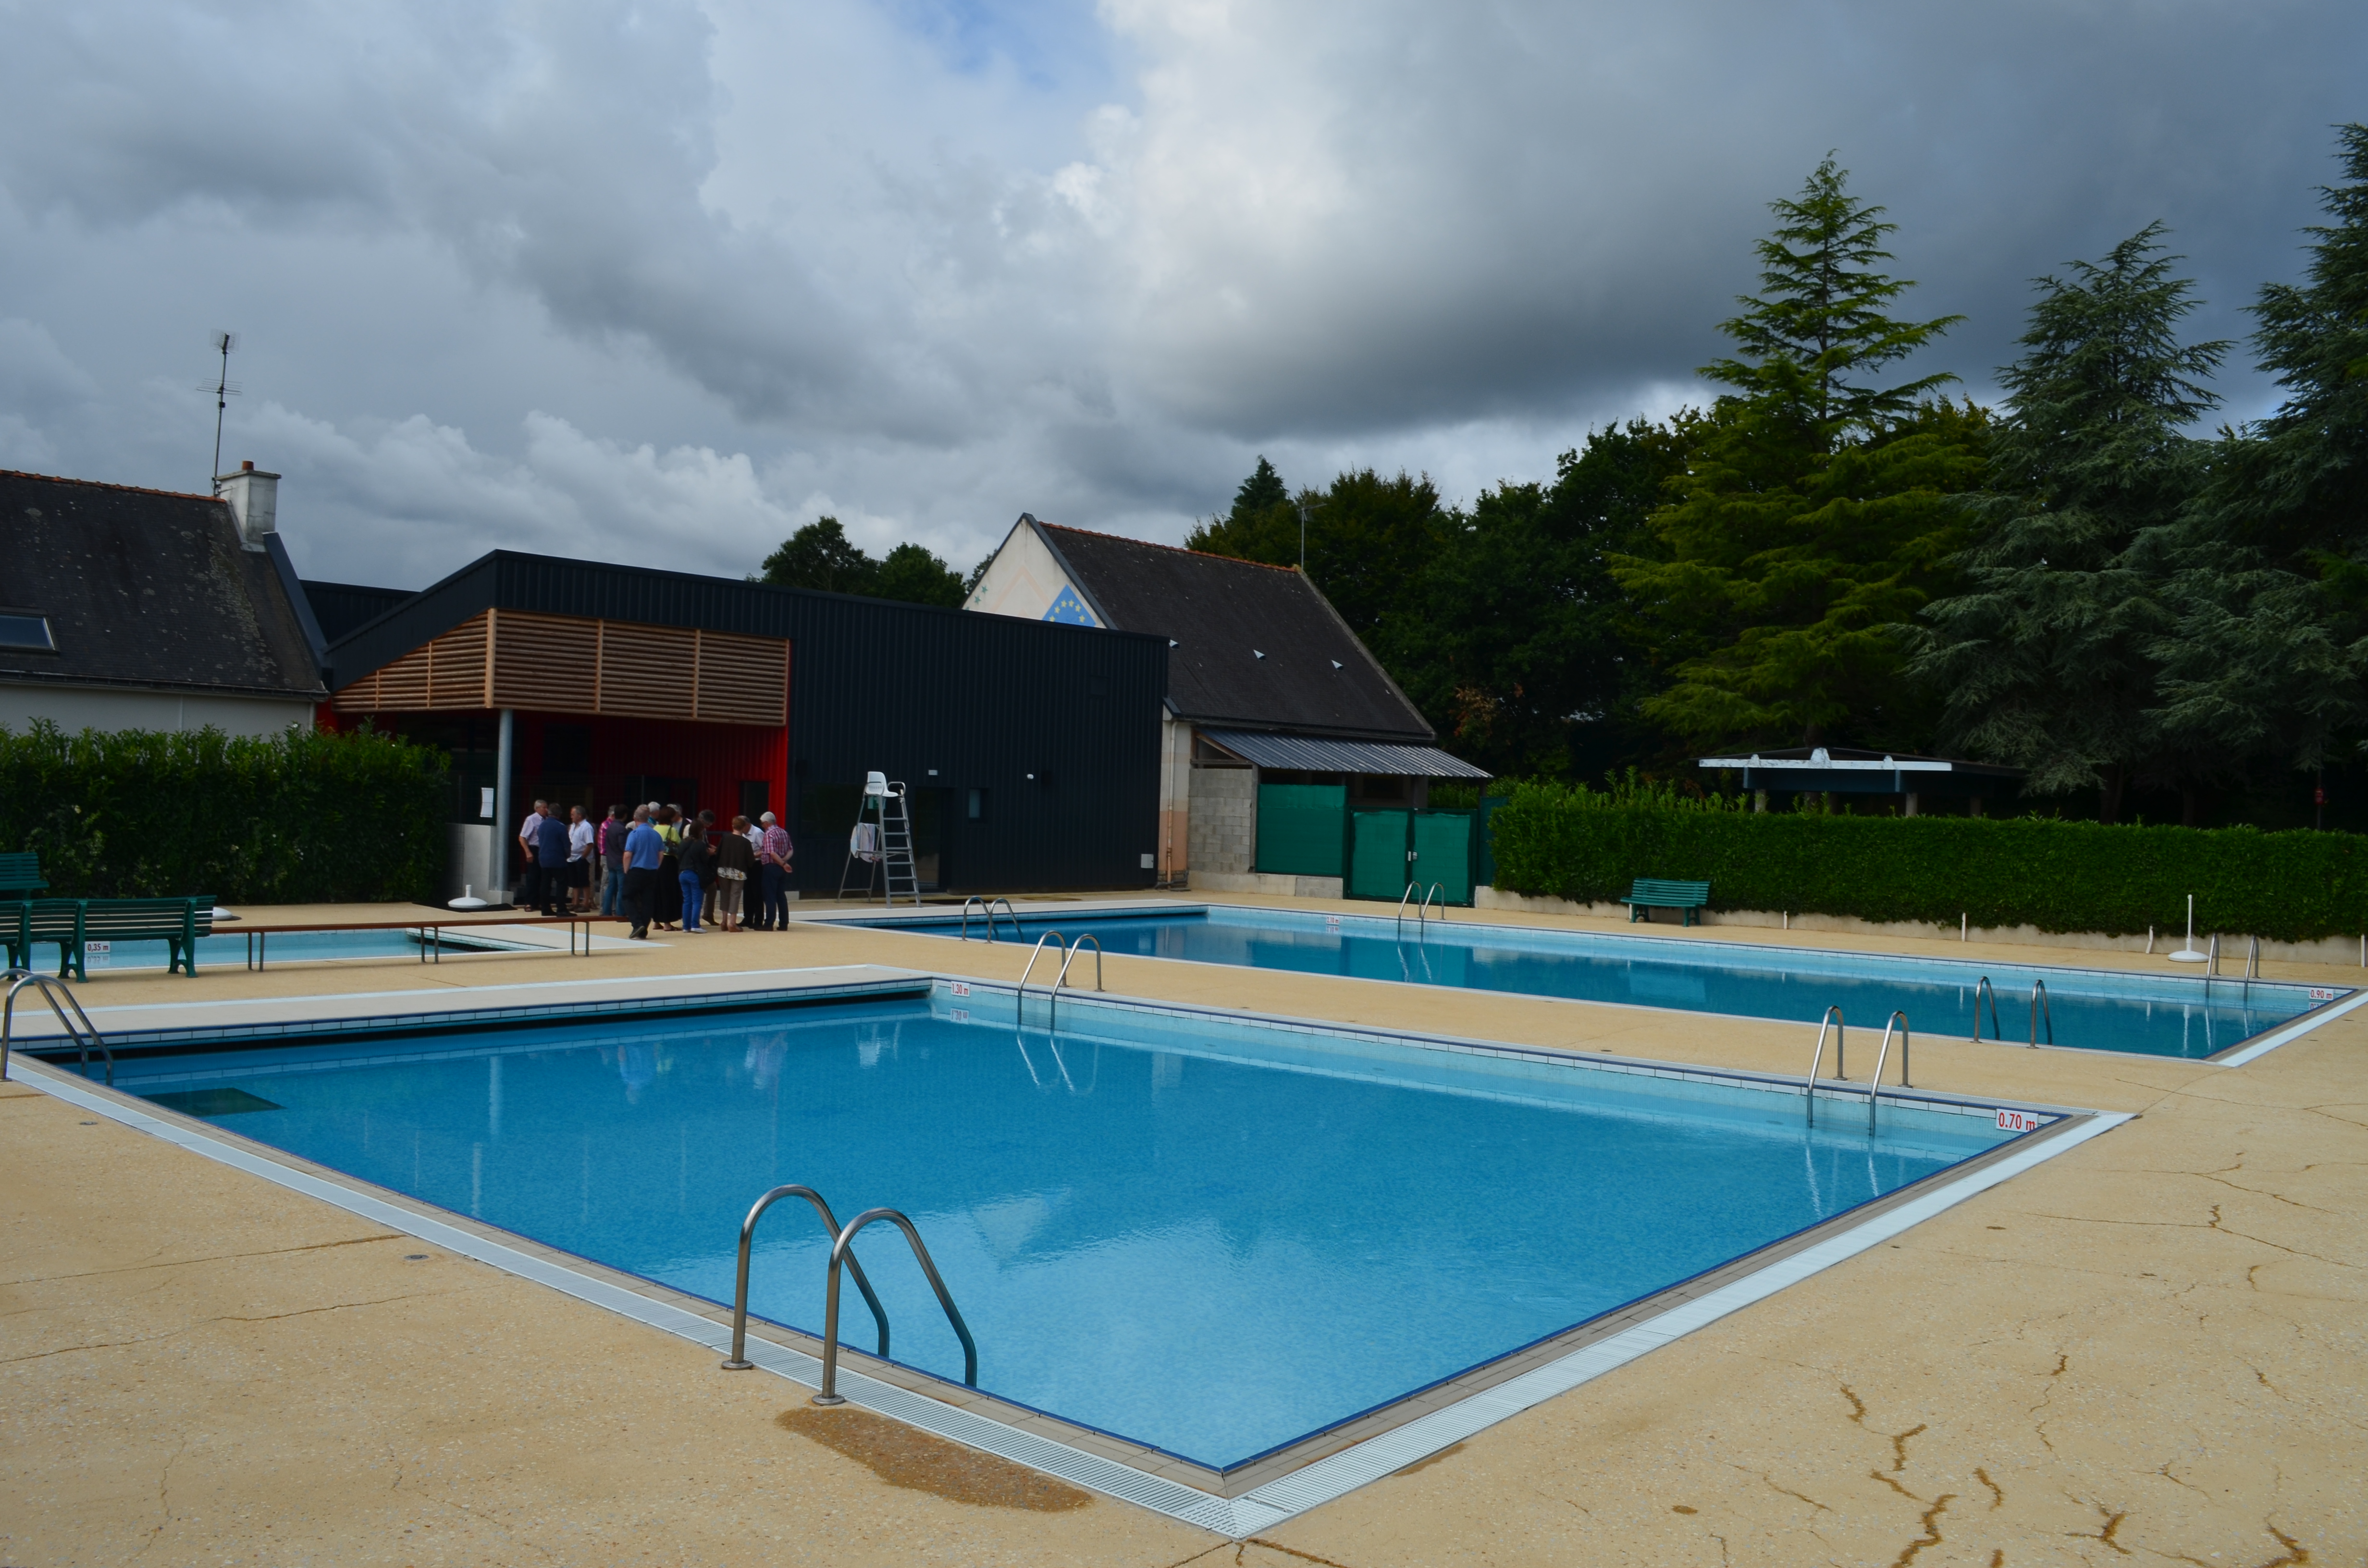 La piscine de Sérent, un lieu de baignade exceptionnel, que l'on apprécie particulièrement quand il fait beau et chaud